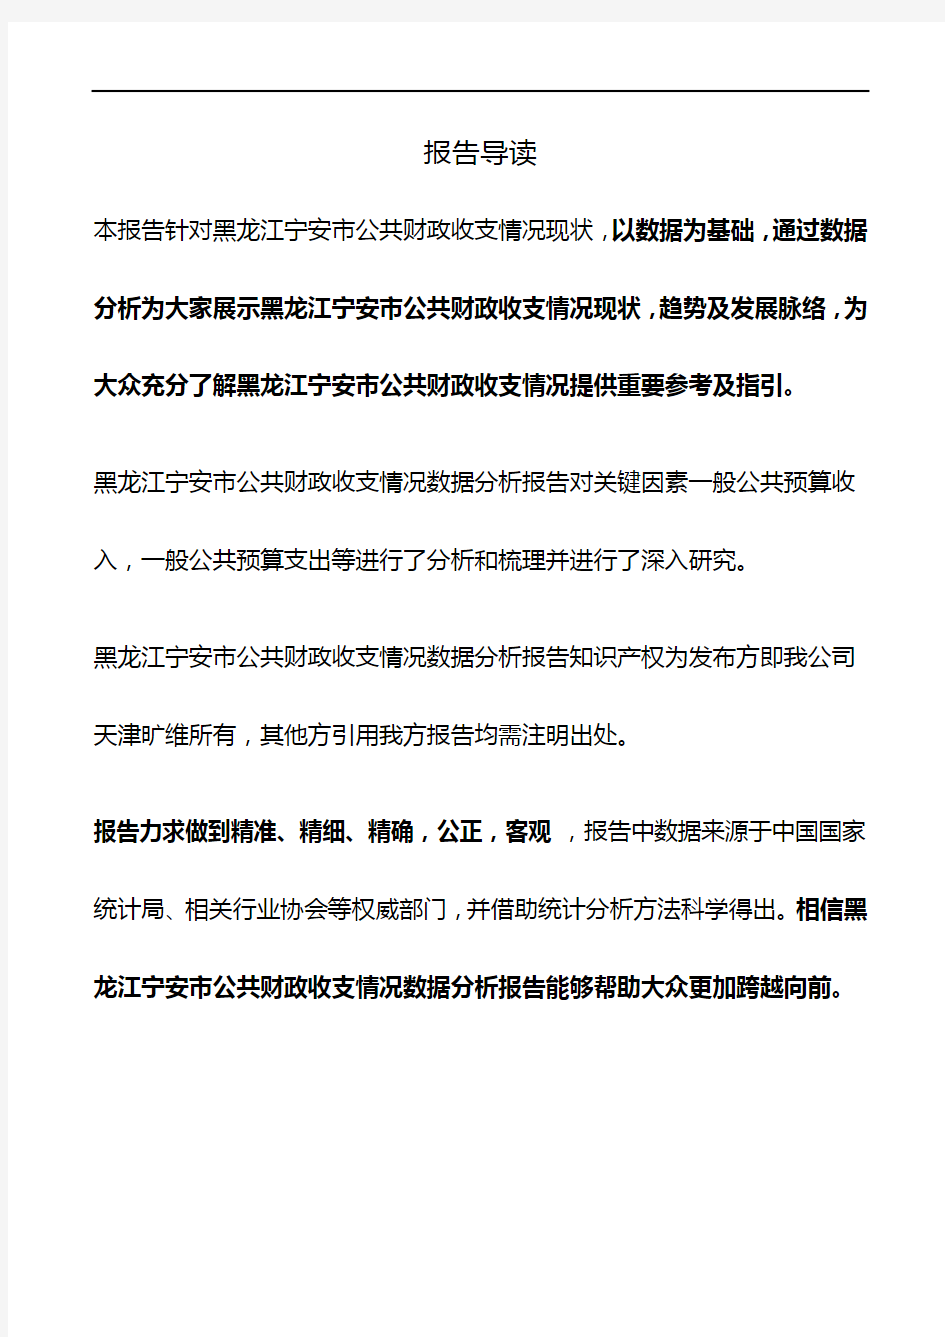 黑龙江宁安市公共财政收支情况3年数据分析报告2019版